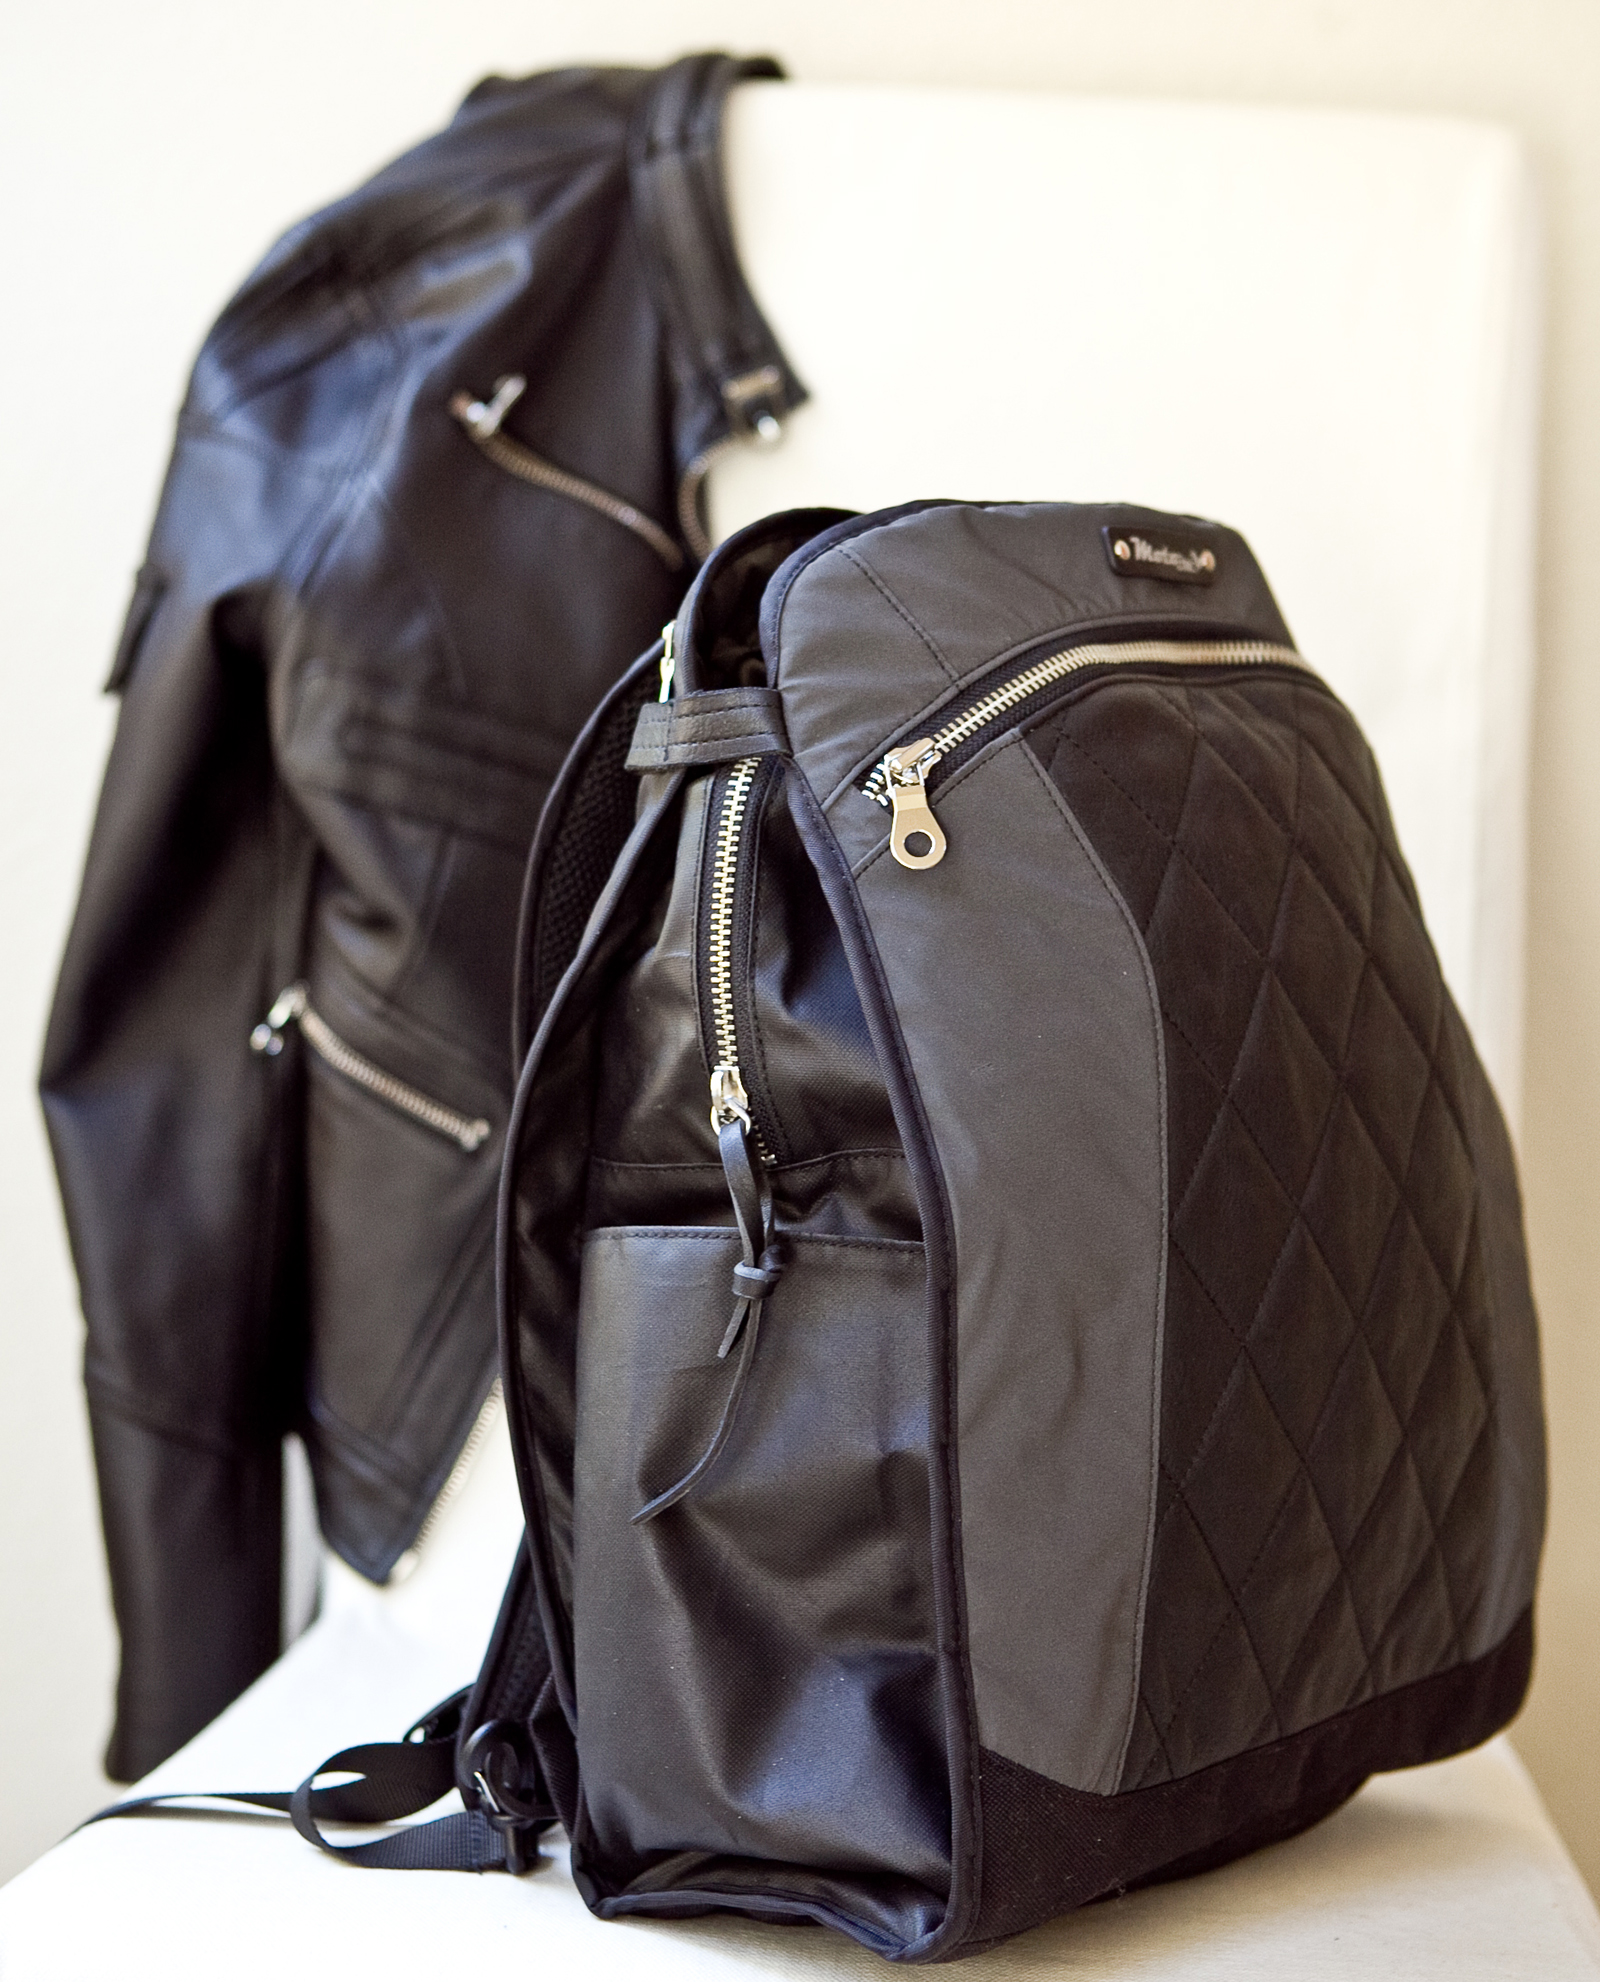 The Lauren bag: Black